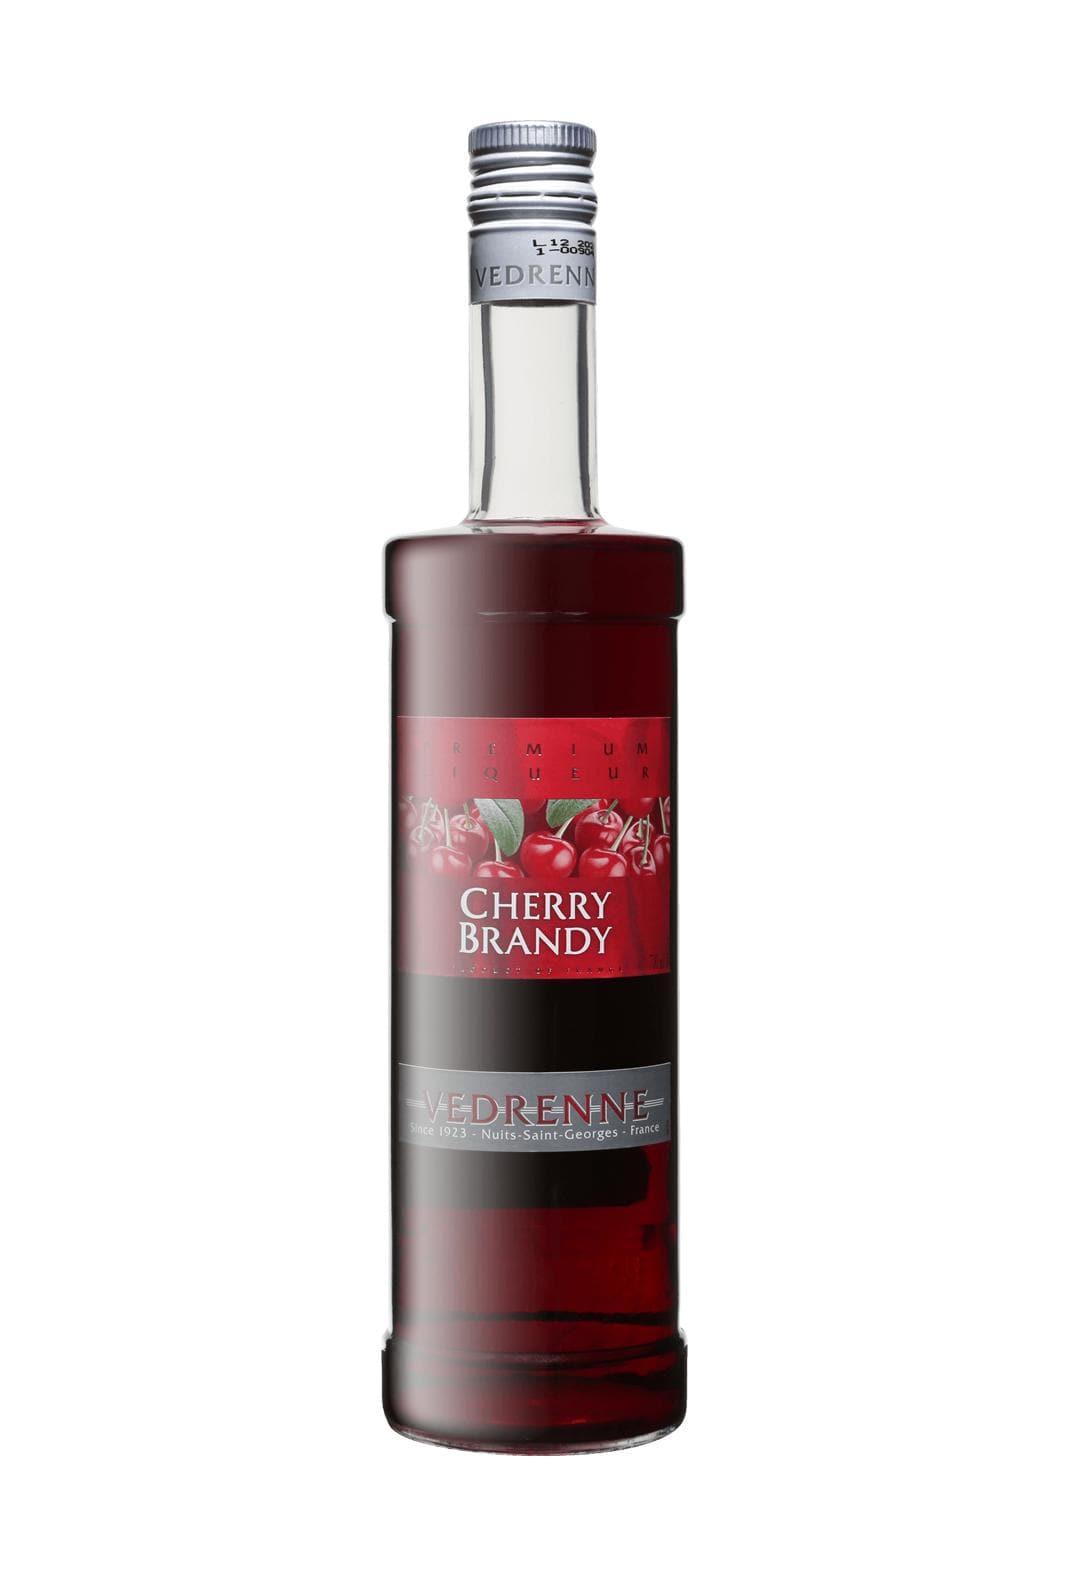 Vedrenne Cherry Brandy 25% 700ml | Liquor & Spirits | Shop online at Spirits of France